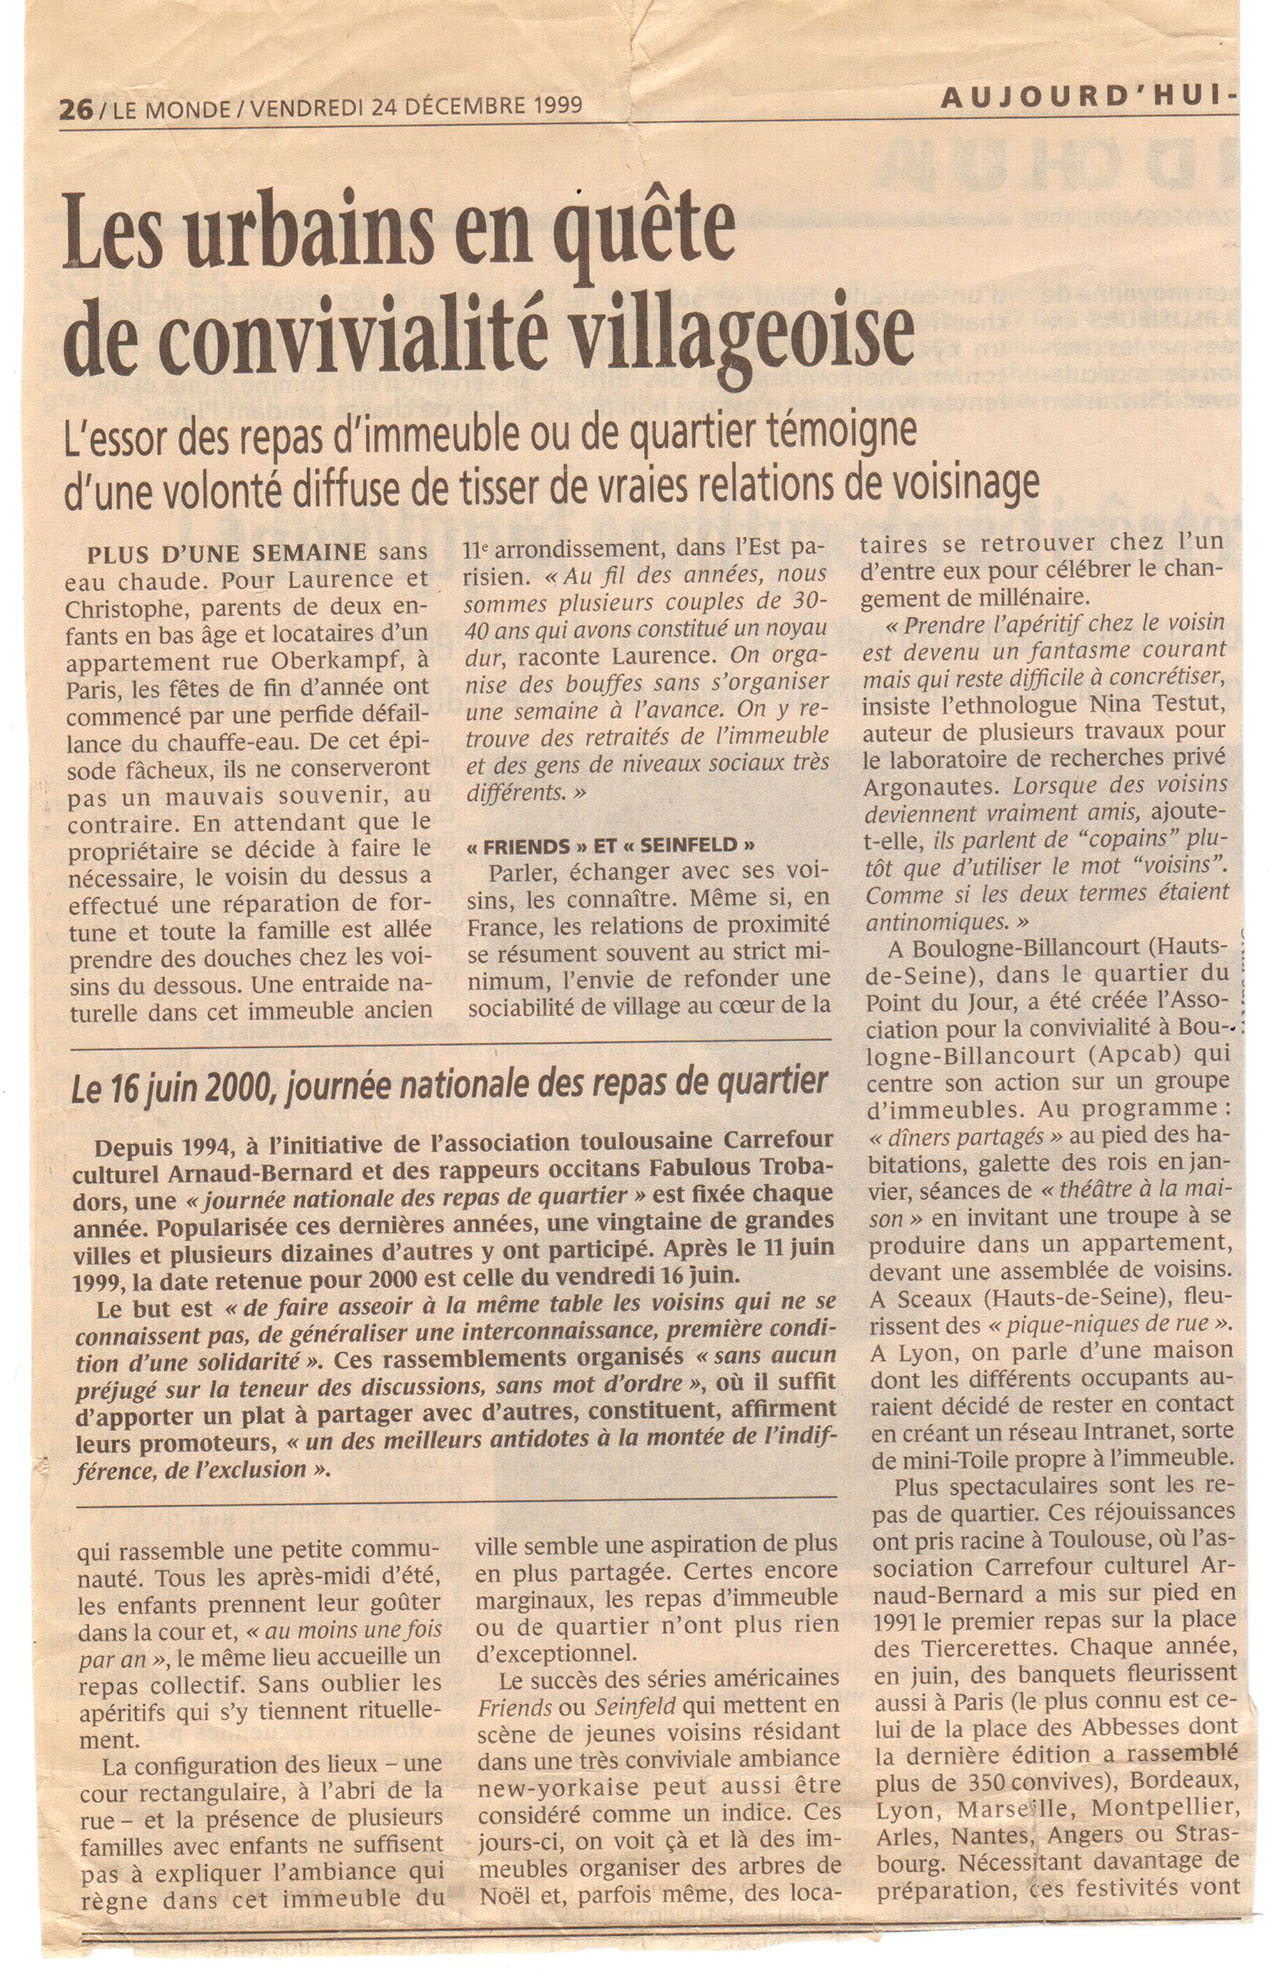 Le Monde 24 décembre 1999